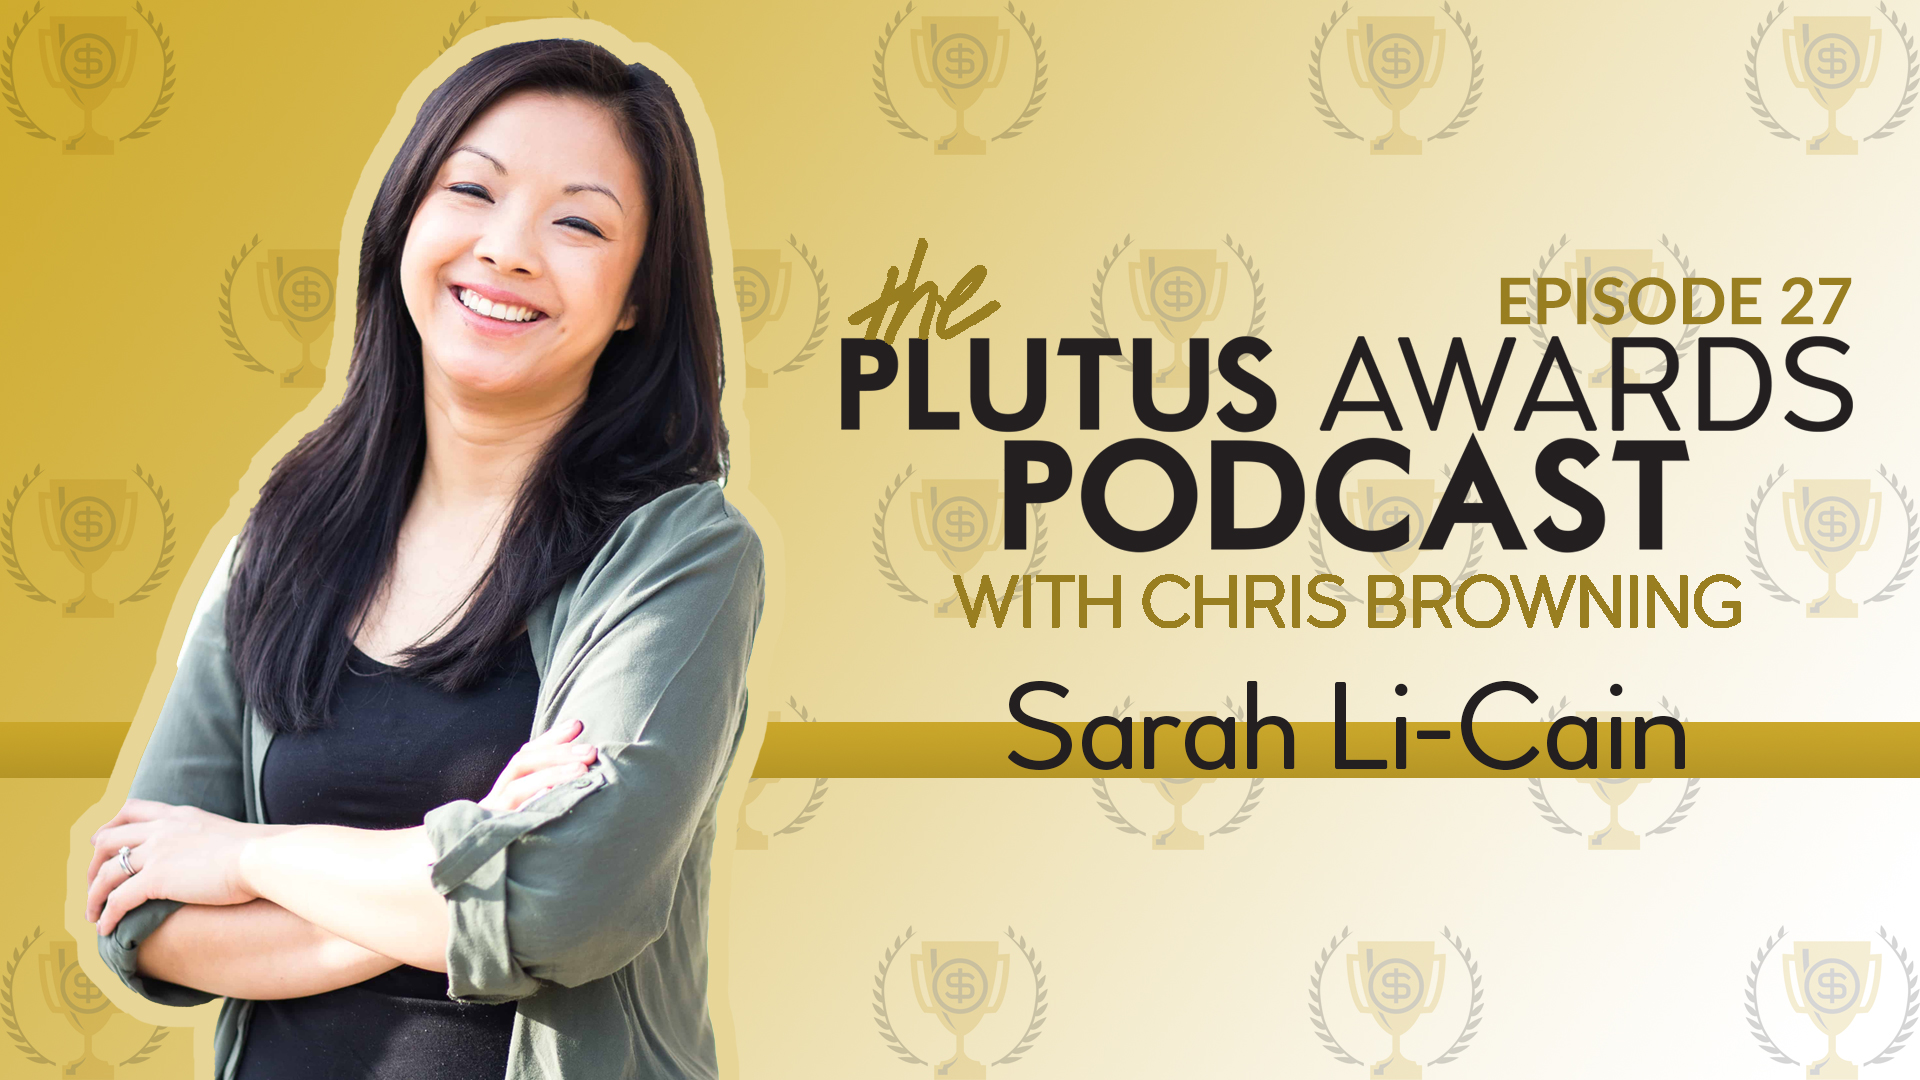 Plutus Awards Podcast Sarah Li-Cain Featured Image